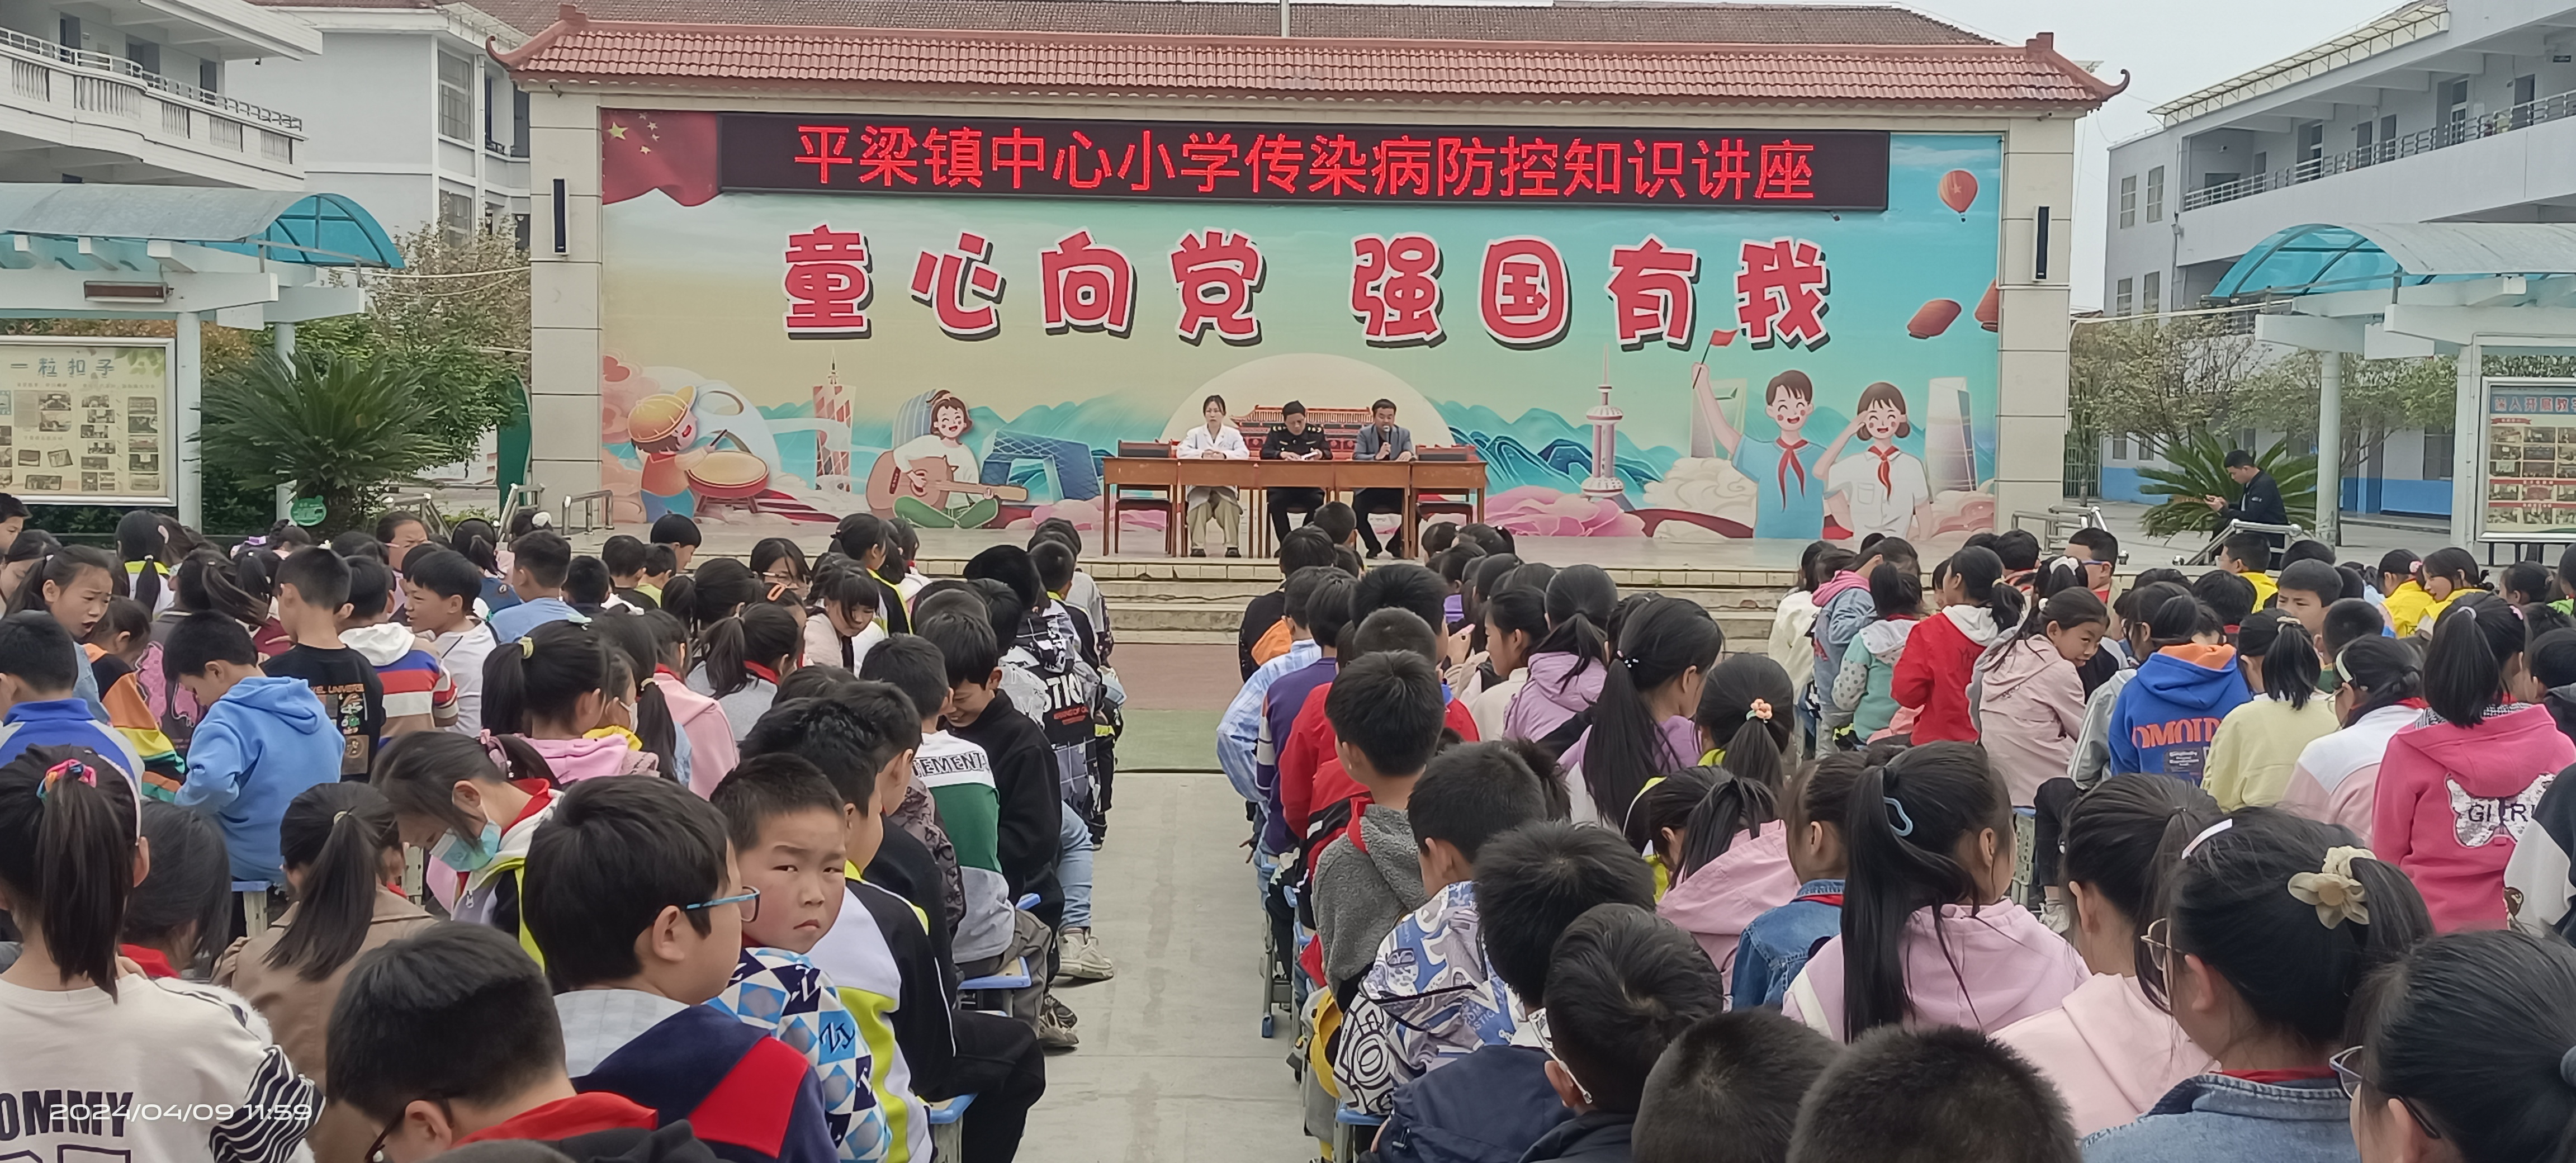 汉阴县平梁镇中心小学开展食品安全及传染病知识讲座